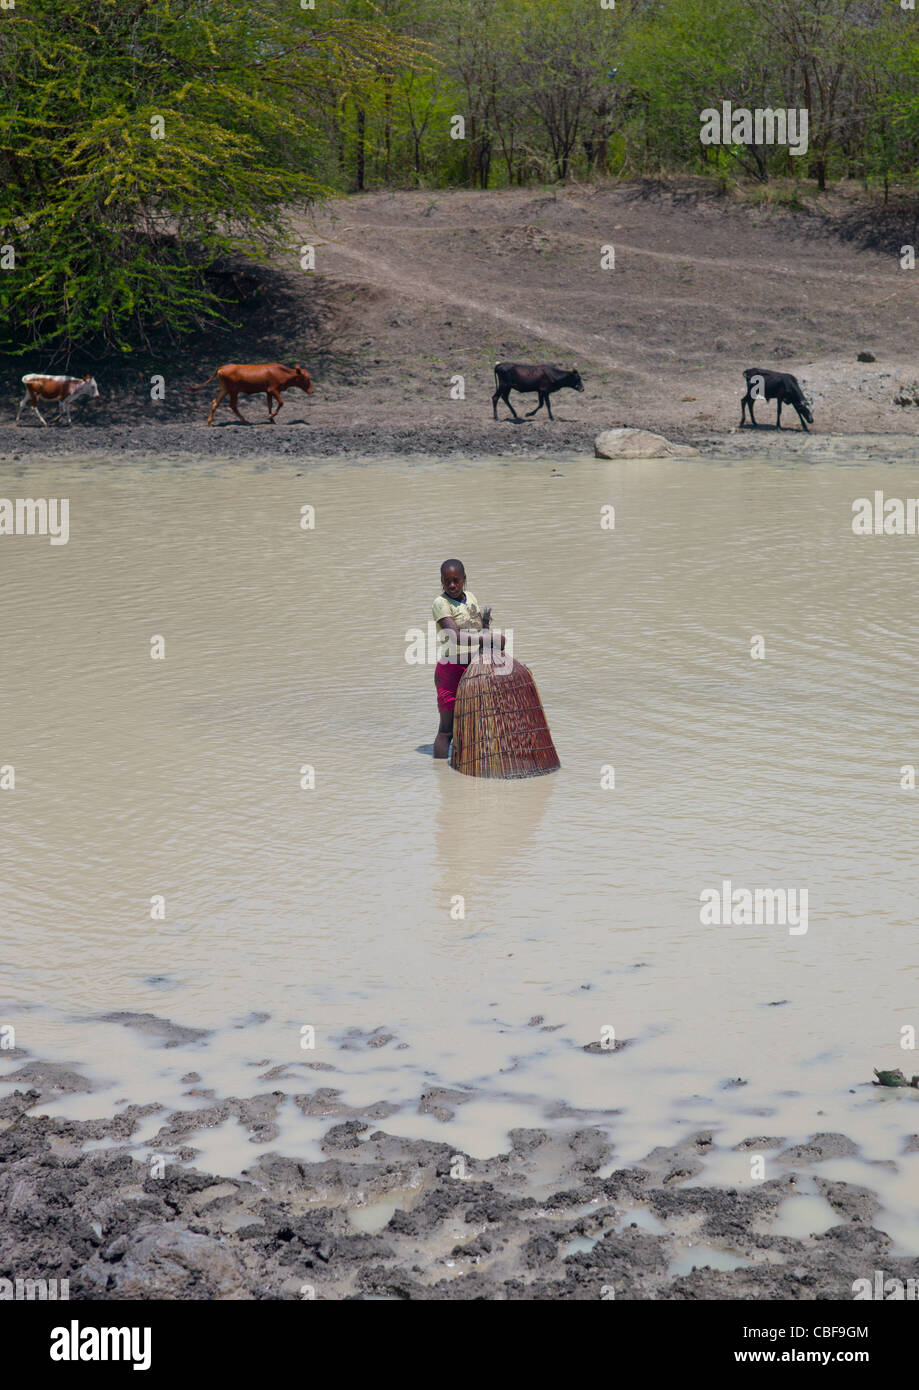 Chica la pesca en el río con una cesta de red para pescar, Angola Foto de stock